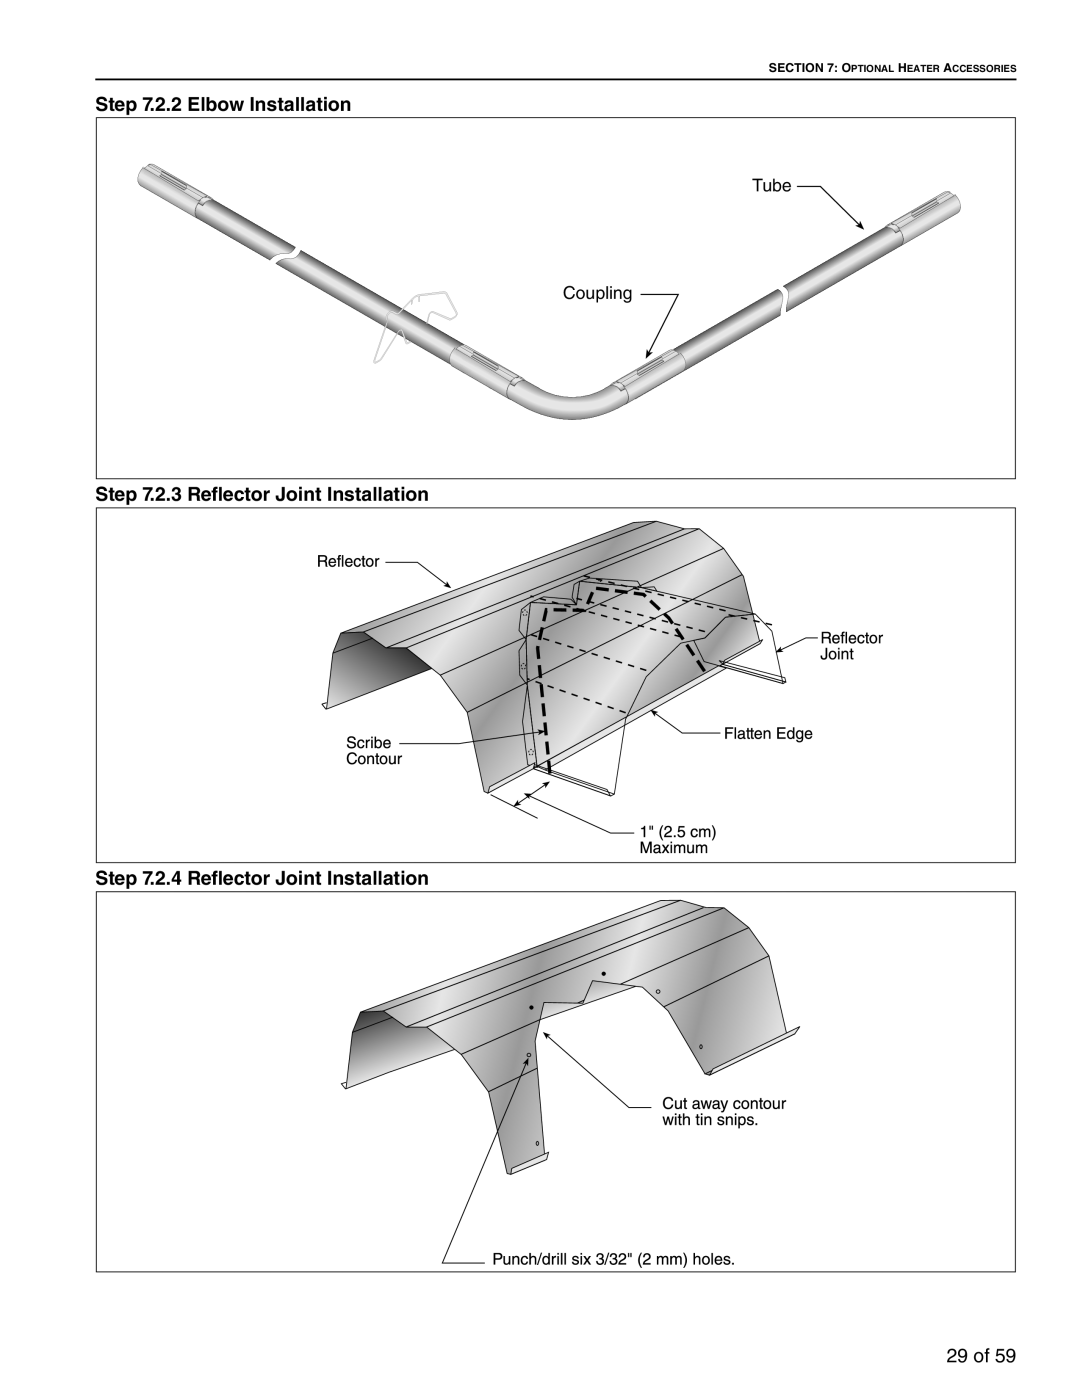 Roberts Gorden BH-100 2.2 Elbow Installation, 2.3 Reflector Joint Installation, 2.4 Reflector Joint Installation, 29 of 